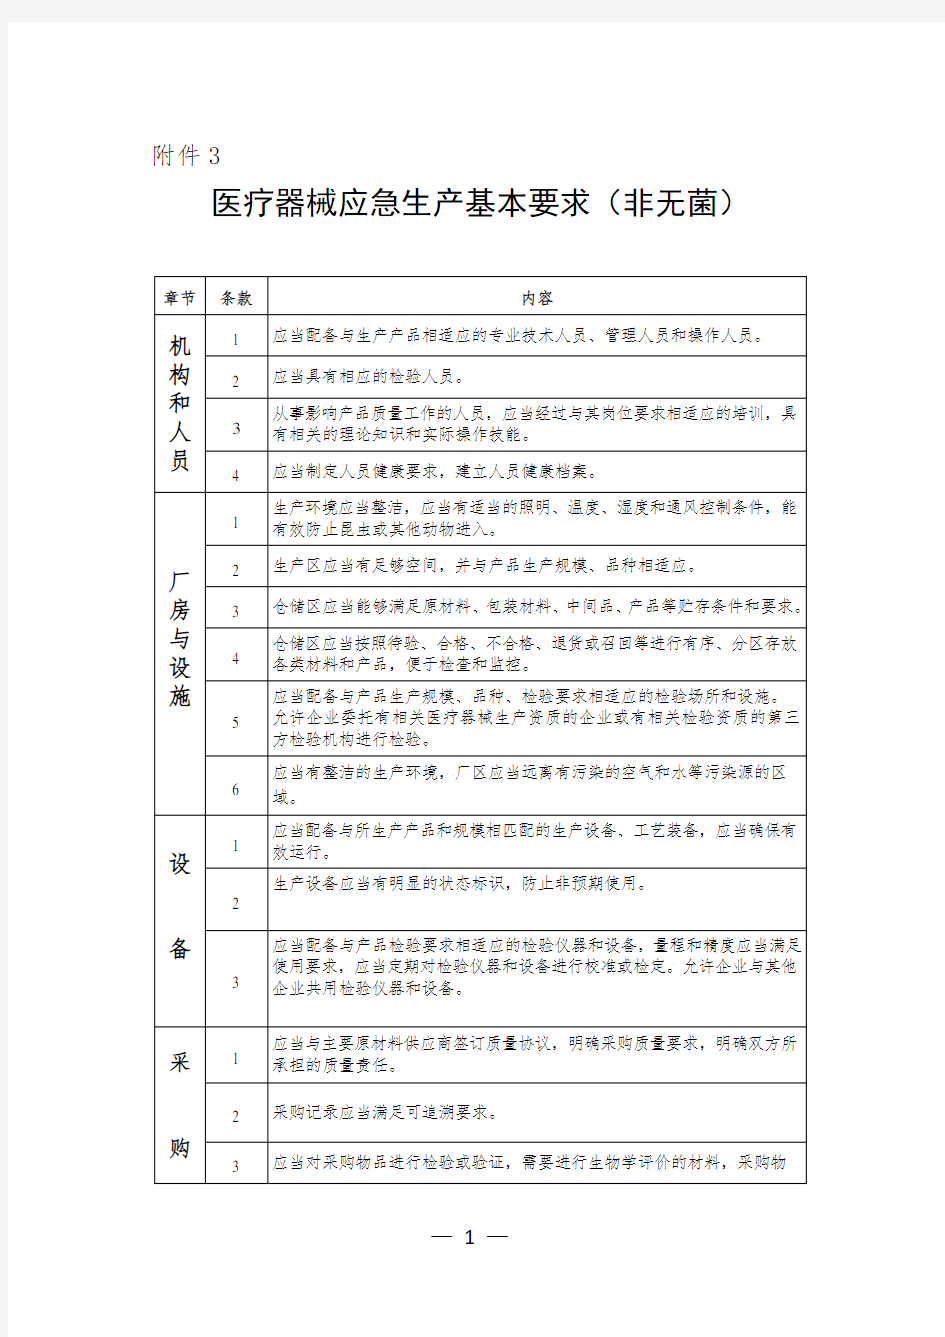 浙江省医疗器械应急生产基本要求(非无菌)